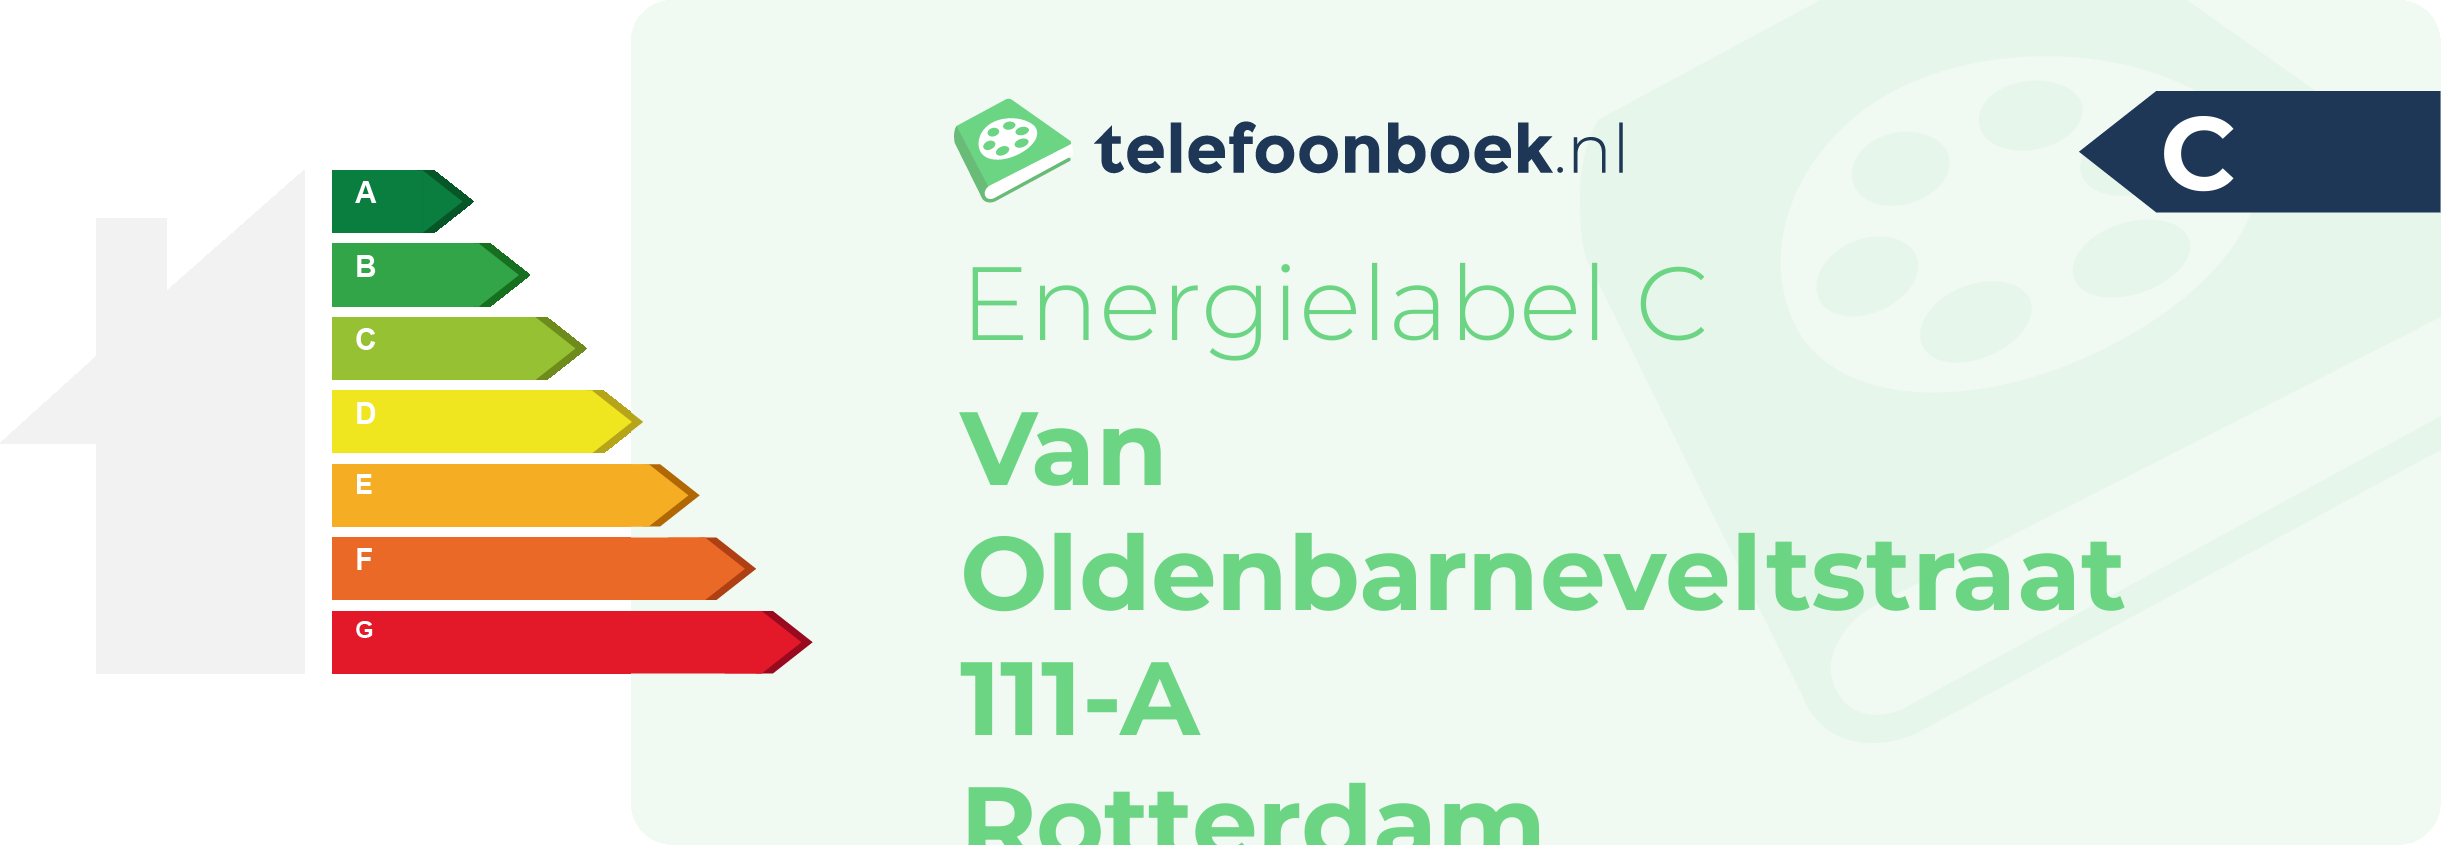 Energielabel Van Oldenbarneveltstraat 111-A Rotterdam